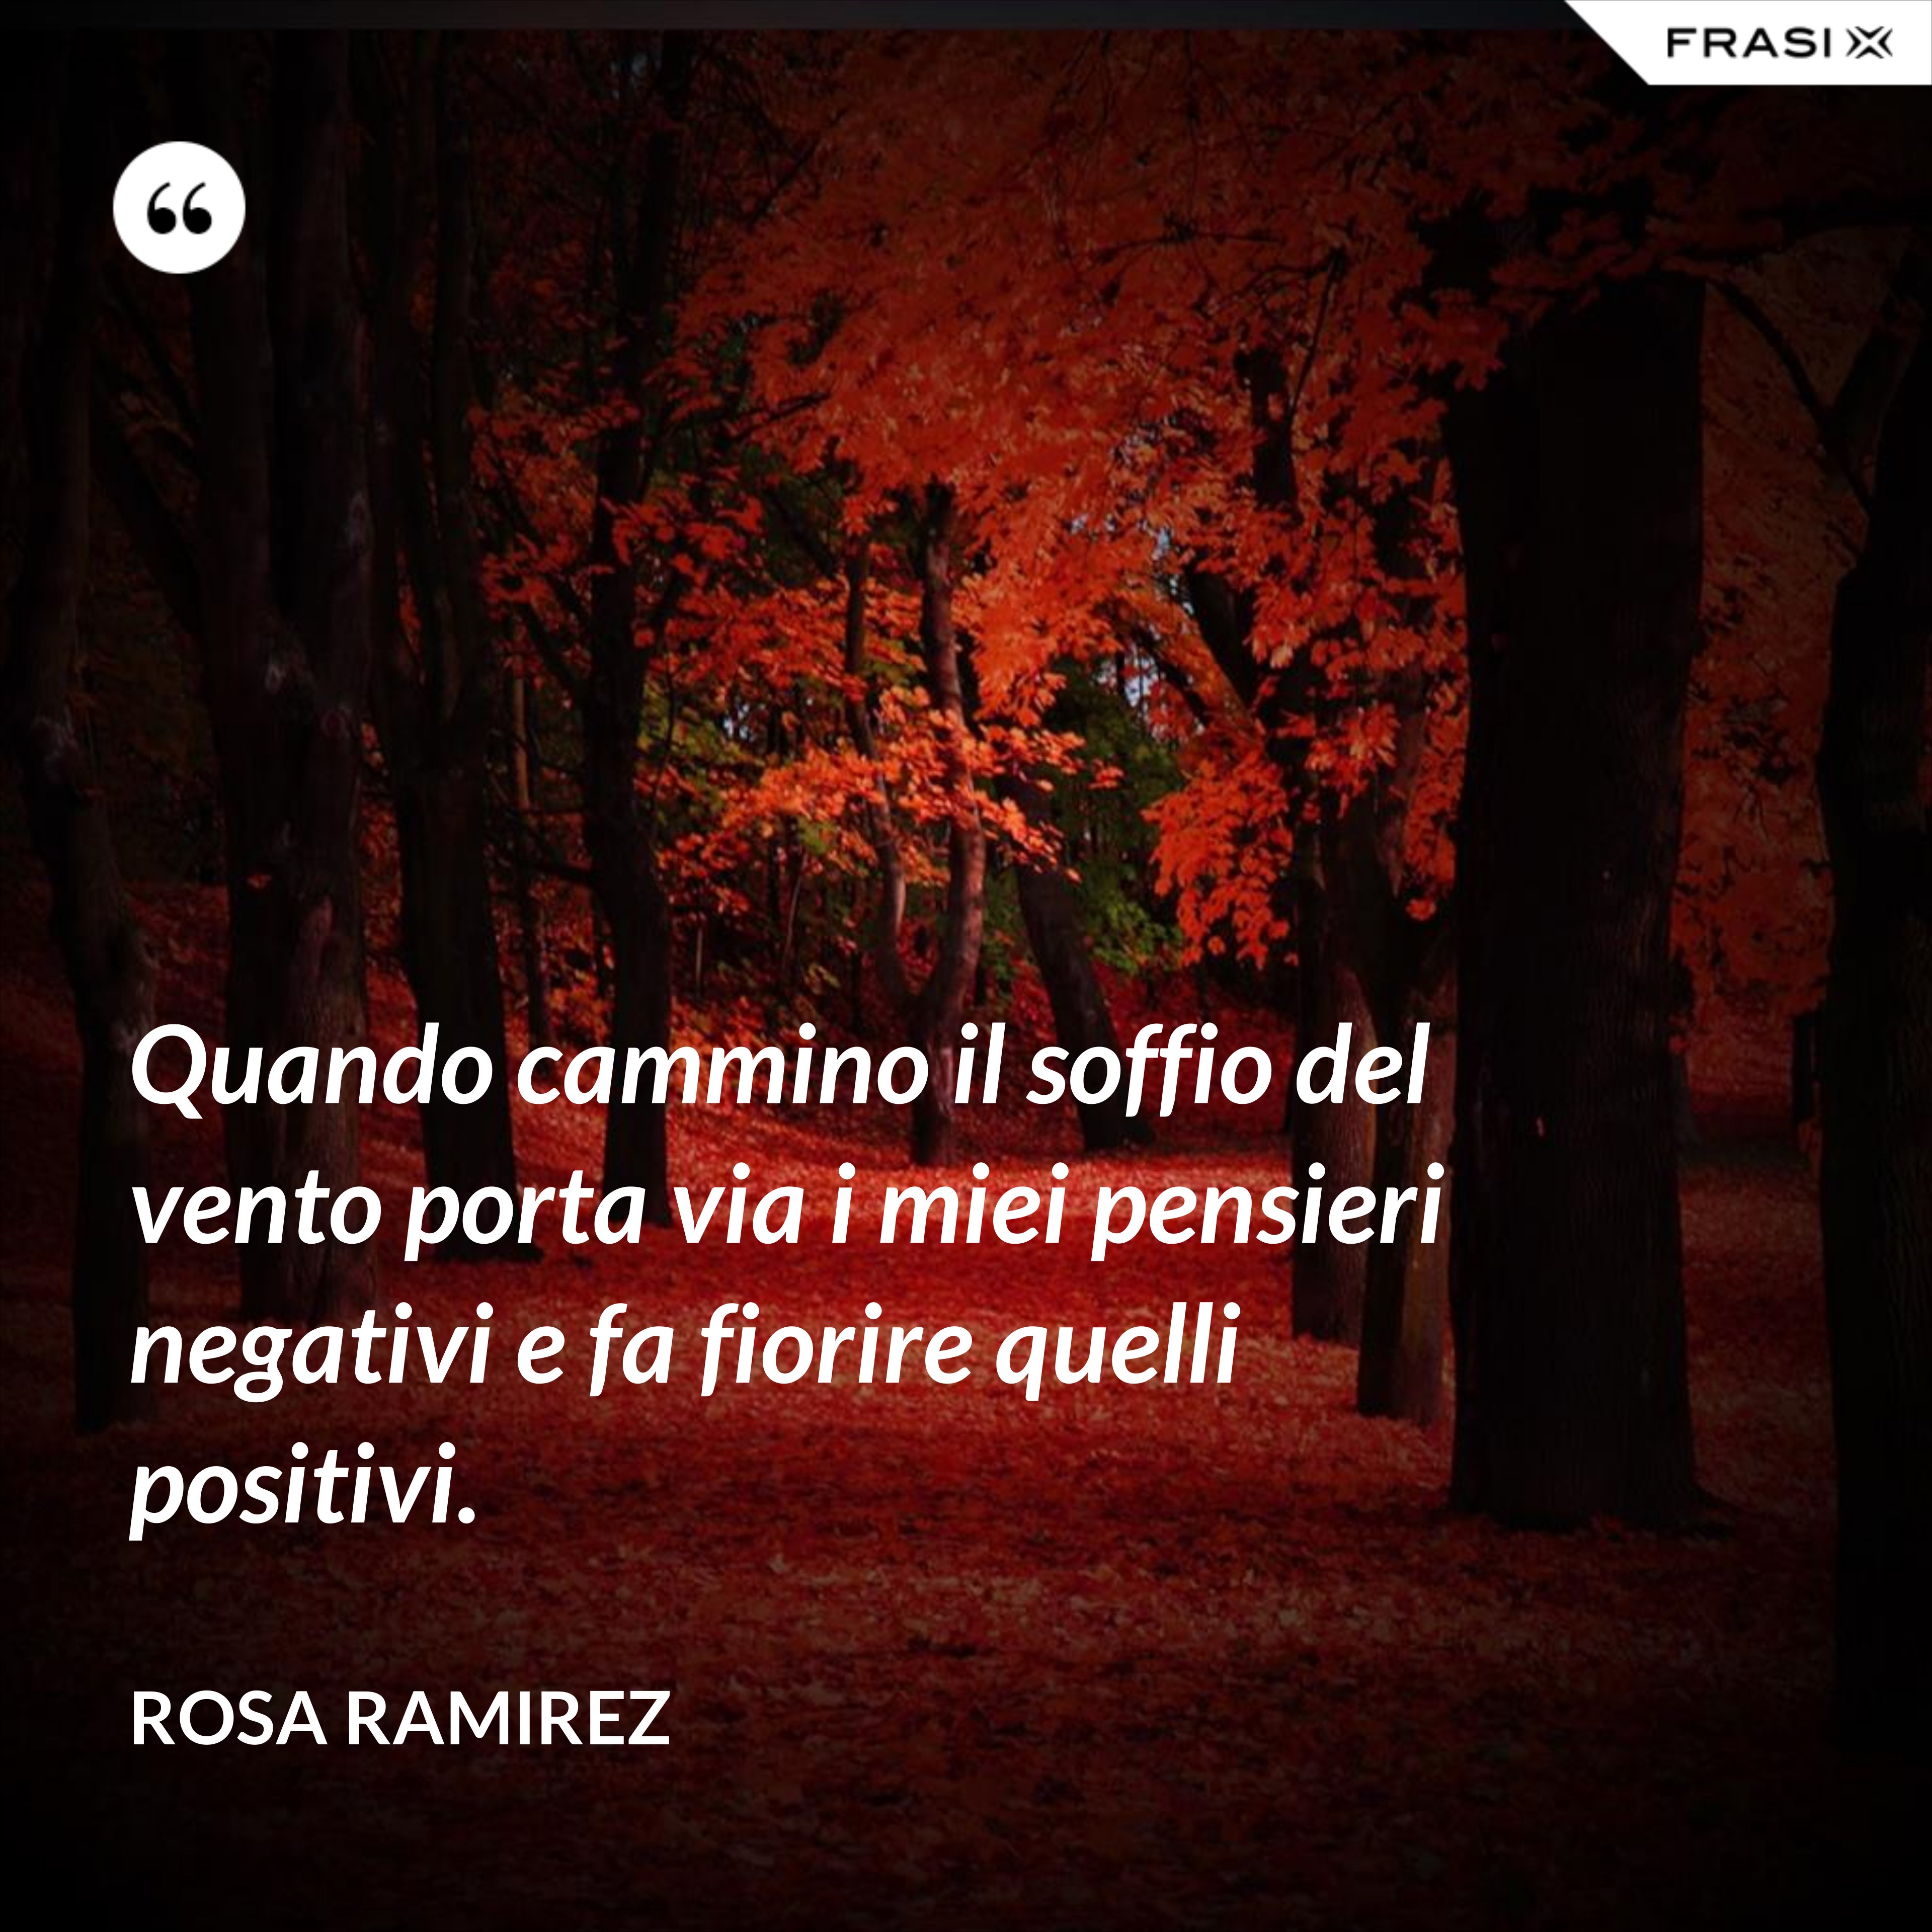 Quando cammino il soffio del vento porta via i miei pensieri negativi e fa fiorire quelli positivi. - Rosa Ramirez